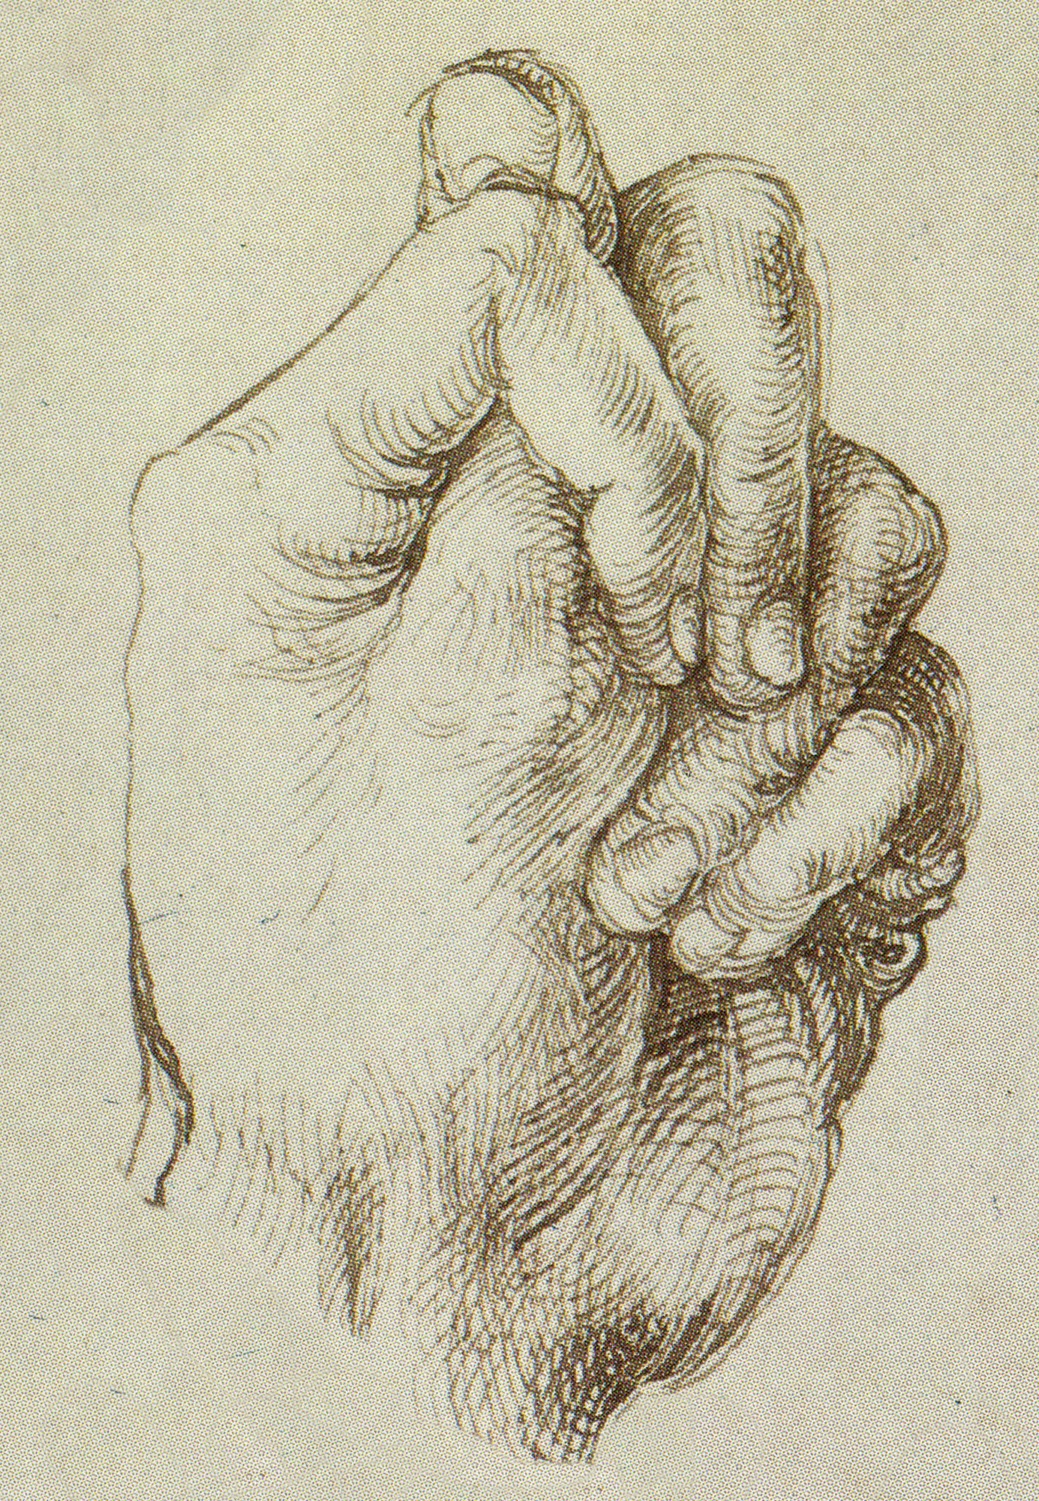 Durer Etude de main Vienne, Albertina, 1496